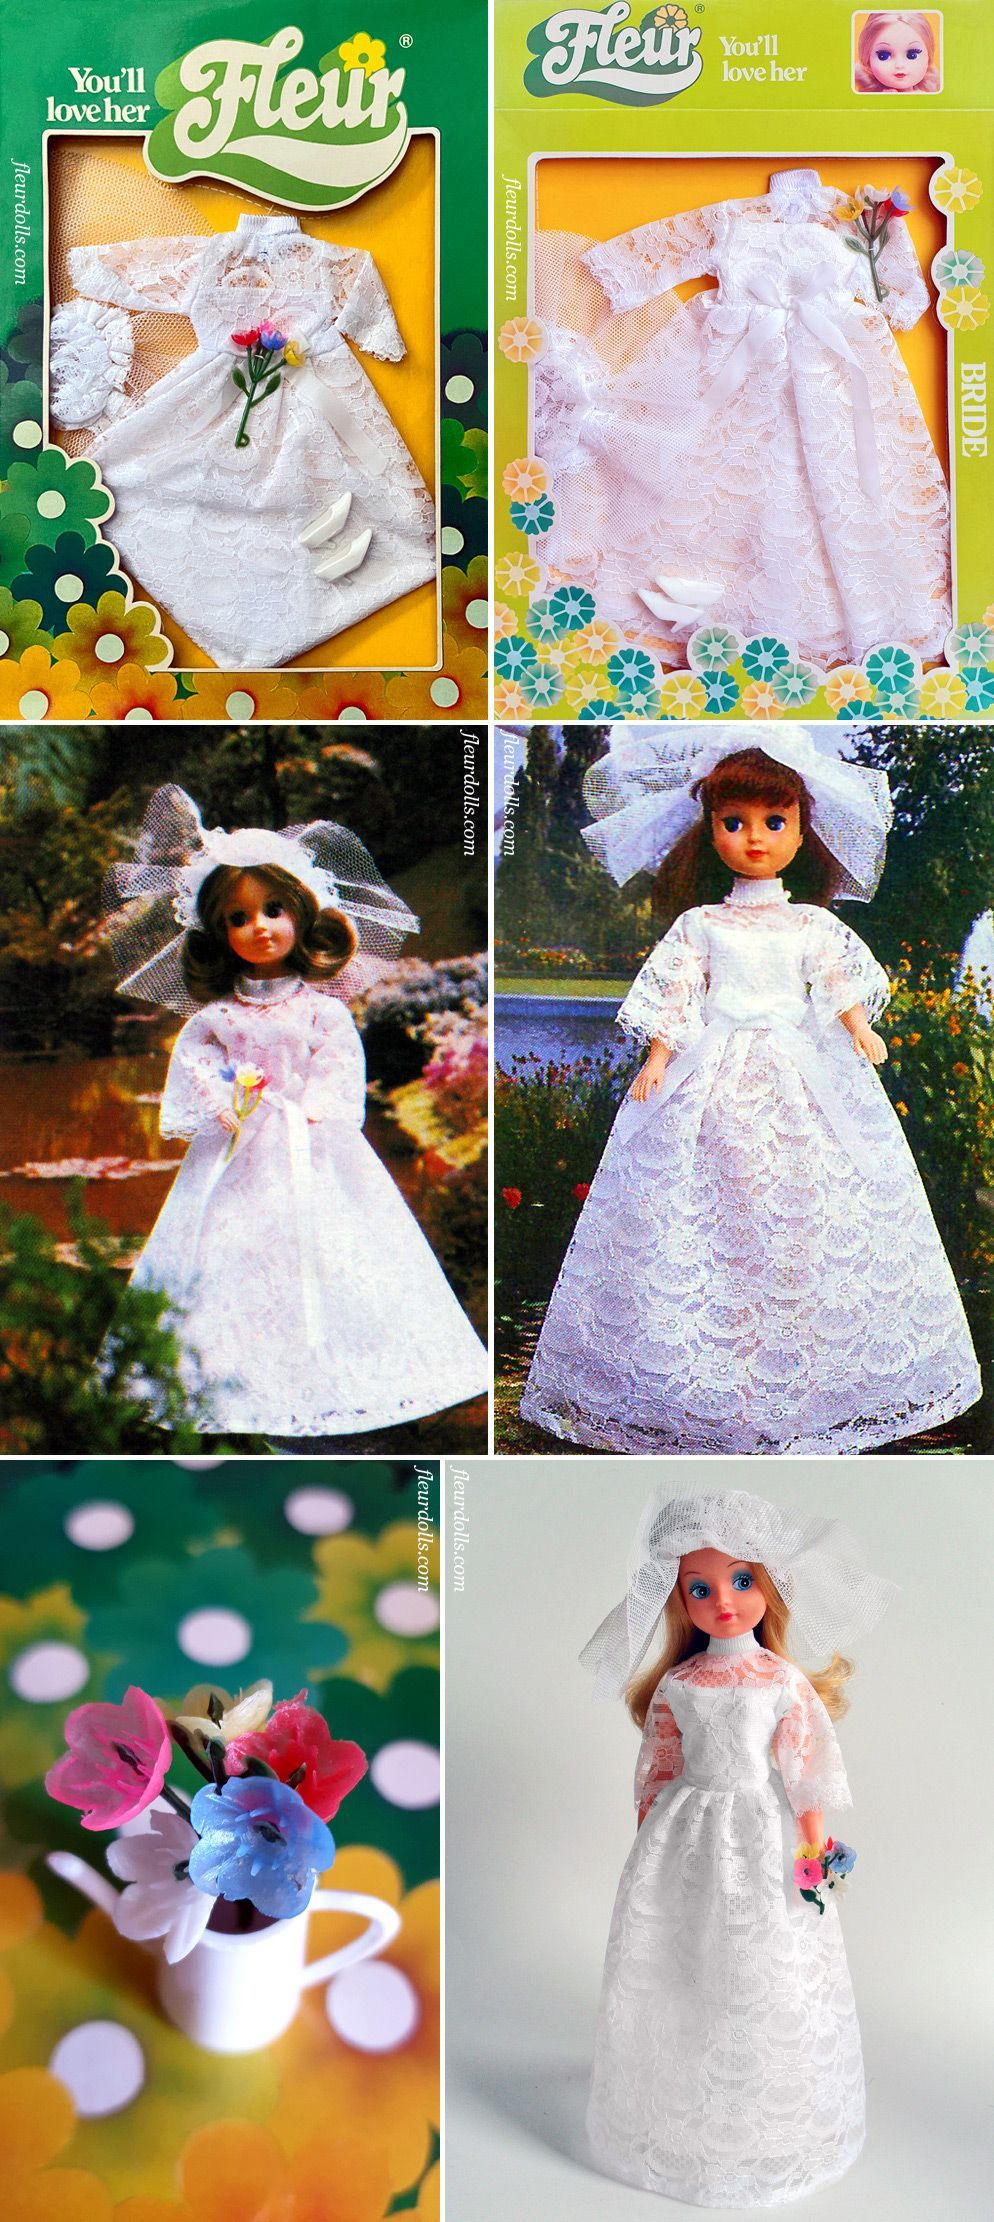 Fleur doll bride white gown veil fashion 1220 Otto Simon 1980s